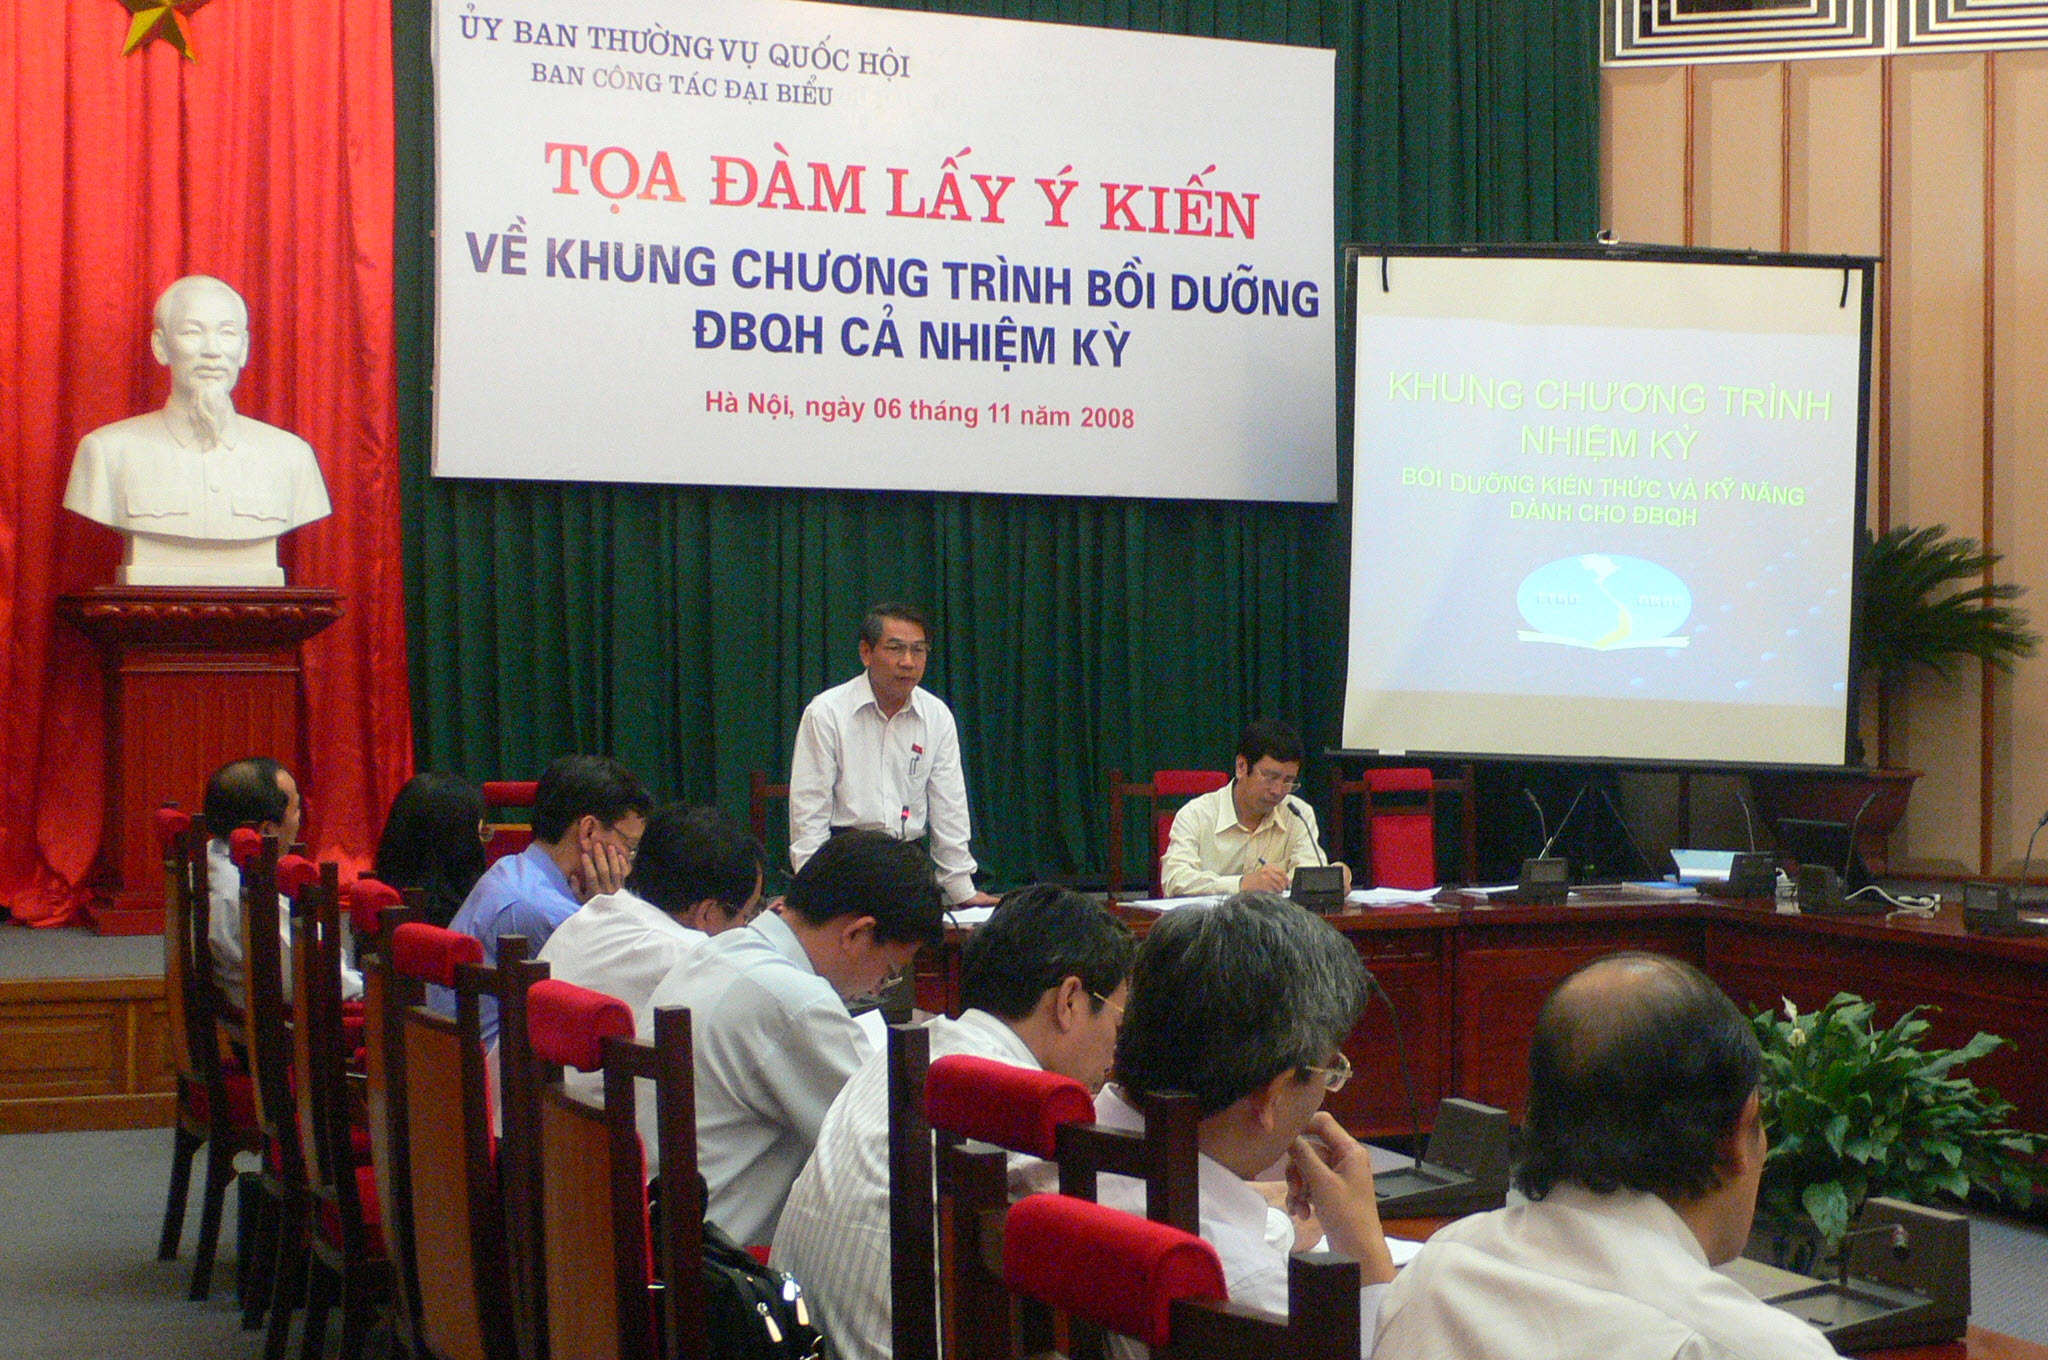 Ảnh Cuộc Tọa đàm Lấy ý kiến về Khung chương trình bồi dưỡng ĐBQH cả nhiệm kỳ, Hà Nội, ngày 06/11/2008